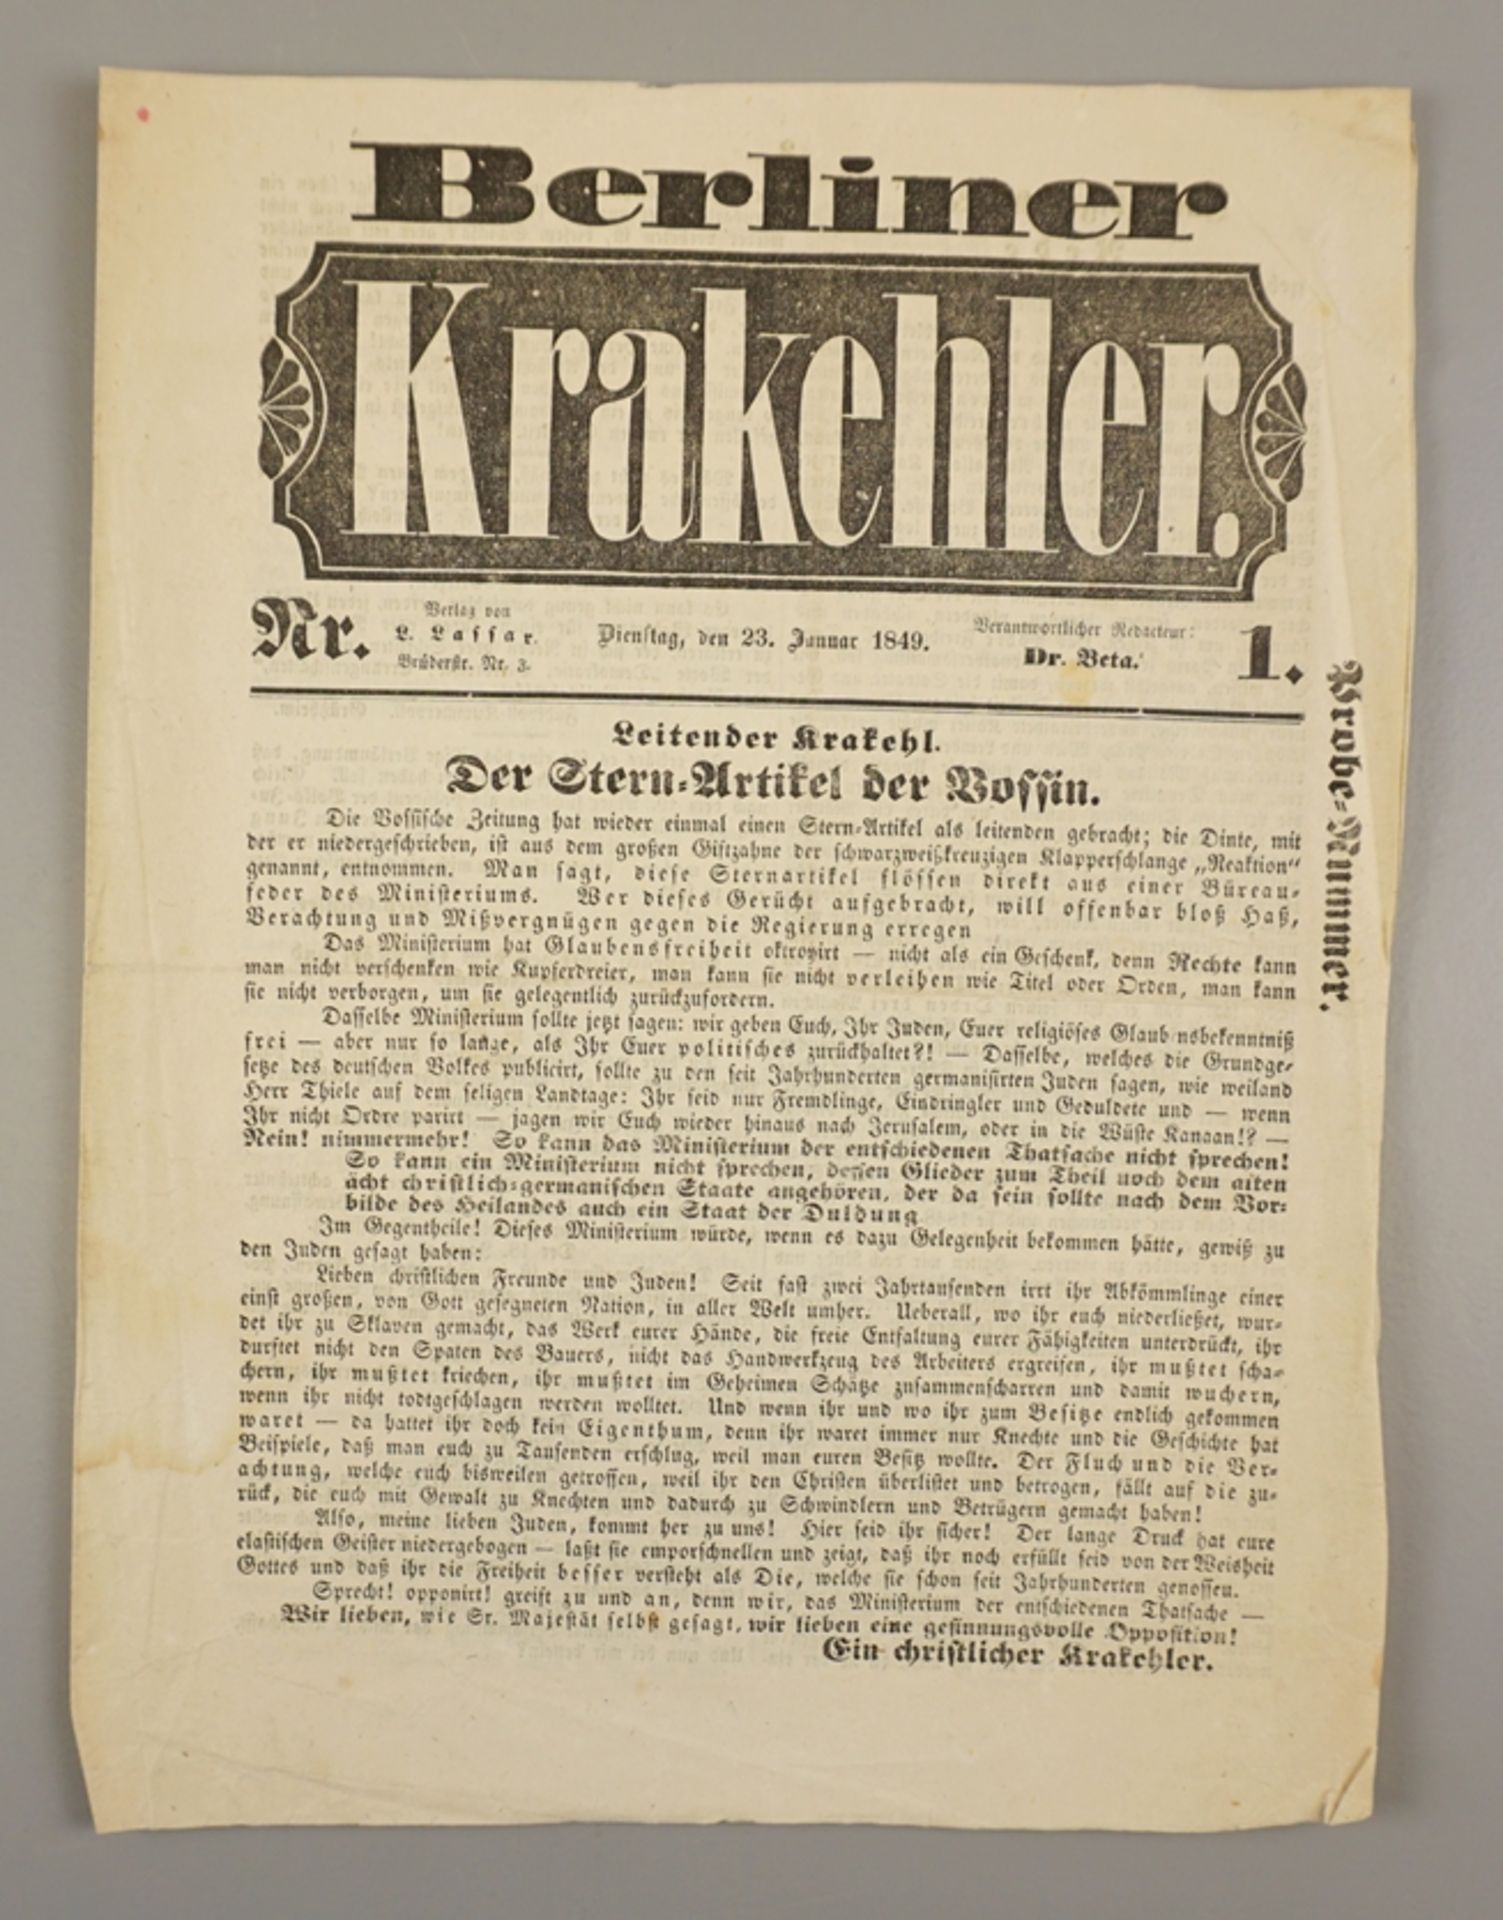 Humoristisches-satirisches-politisches Wochenblatt: Berliner Krakehler, Nr. 1 (23. Januar) 1849, Pr